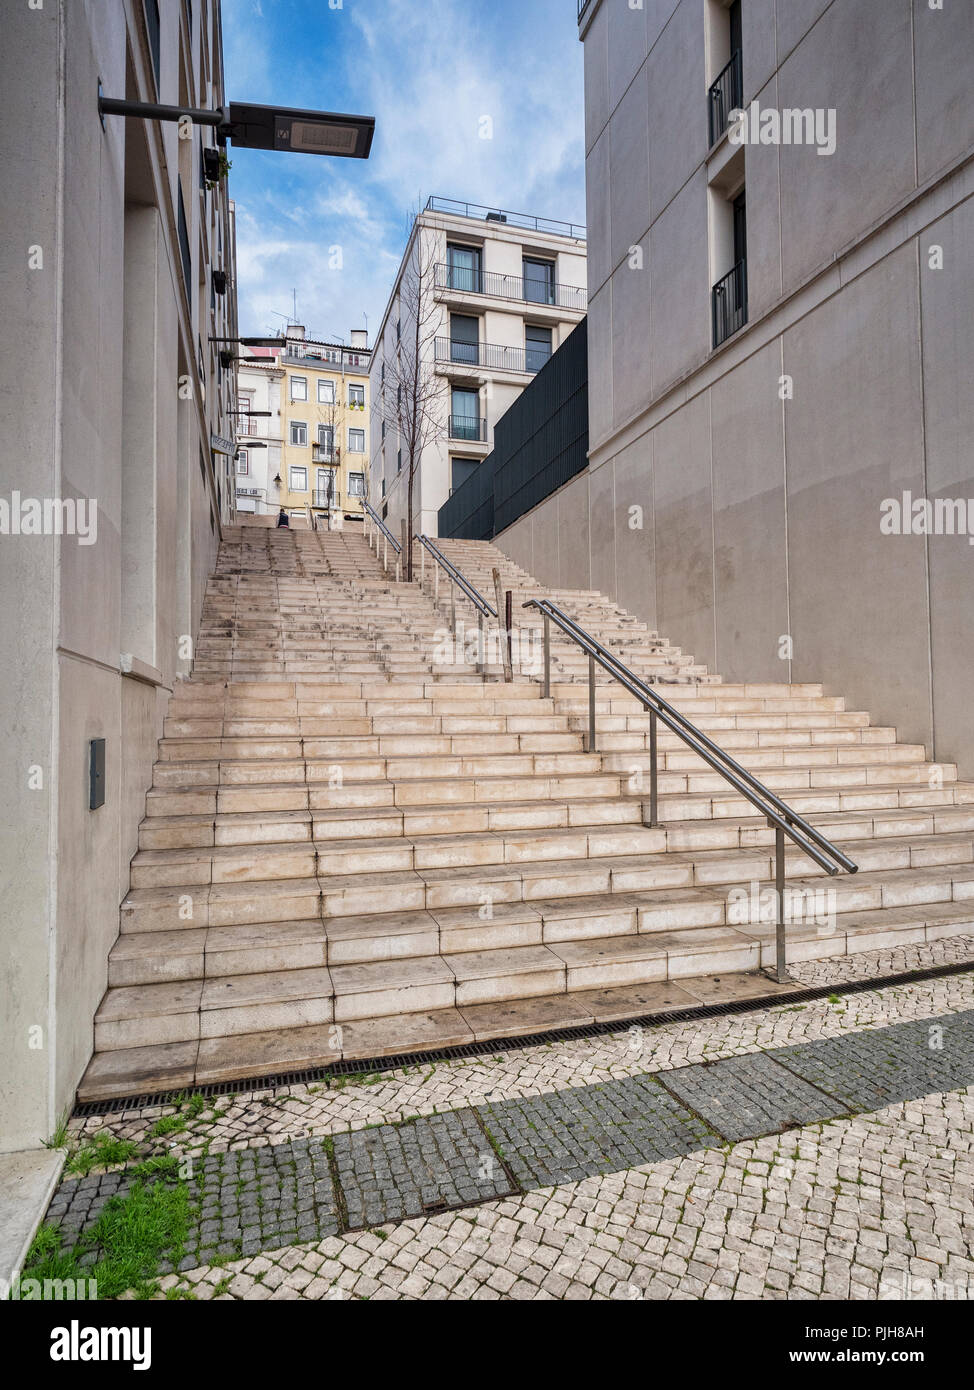 Lisbonne, Portugal - étapes, typiques de ceux observés dans l'ensemble de Lisbonne, une ville construite sur sept collines. Banque D'Images